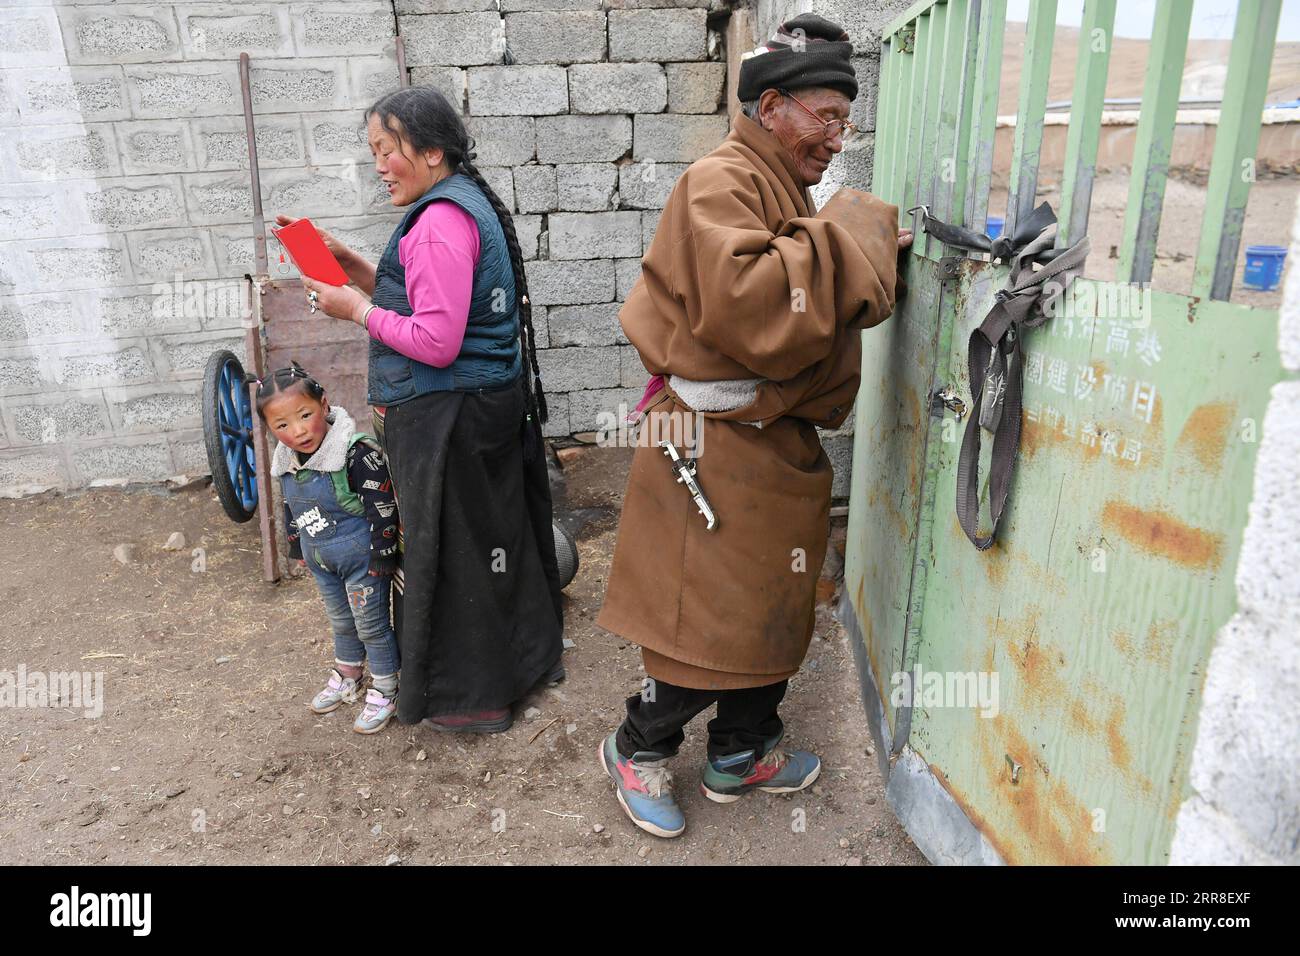 210505 -- LHASA, 5. Mai 2021 -- Sonam Tobgye sperrt seinen Viehbestand im Dorf Nalung der Gemeinde Wumatang im Damxung County von Lhasa, der Hauptstadt der autonomen Region Tibet im Südwesten Chinas, am 15. April 2021. Vor der demokratischen Reform in Tibet im Jahr 1959 war Sonam Tobgye ein Sklave und lebte unter grausamer feudaler Leibeigenschaft und in erbärmlicher Bedrängnis. Wir mussten Tag und Nacht arbeiten, nur um exorbitante Steuern zu zahlen, die von Sklavenbesitzern und der lokalen Regierung erhoben wurden, rief Sonam, 82, zurück. Sonam nahm 1959 ein ganz neues Leben auf, als seine Familie Grasland und Vieh sicherte, wovon seine Vorfahren nie geträumt hatten Stockfoto